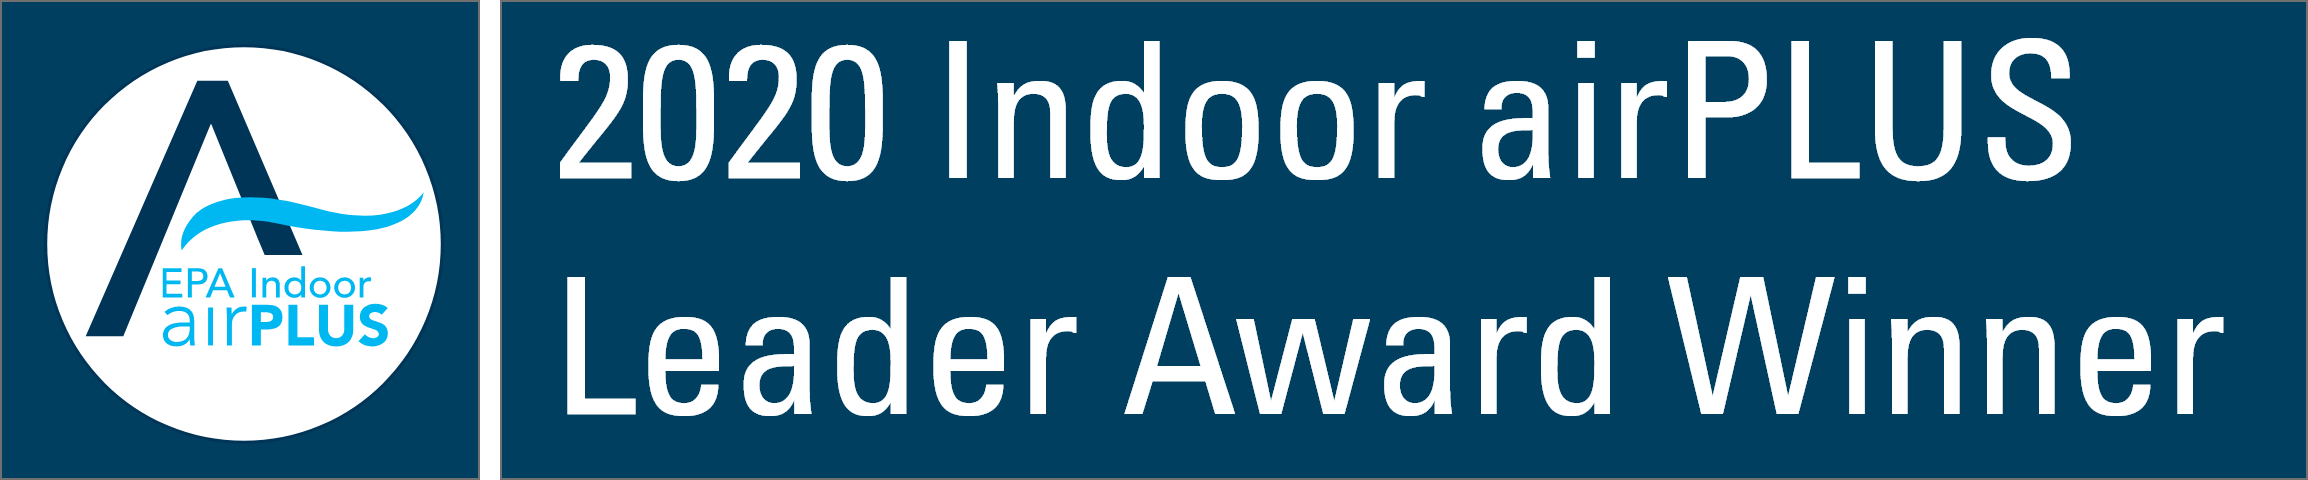 Indoor airPLUS Leader Award Winner Banner